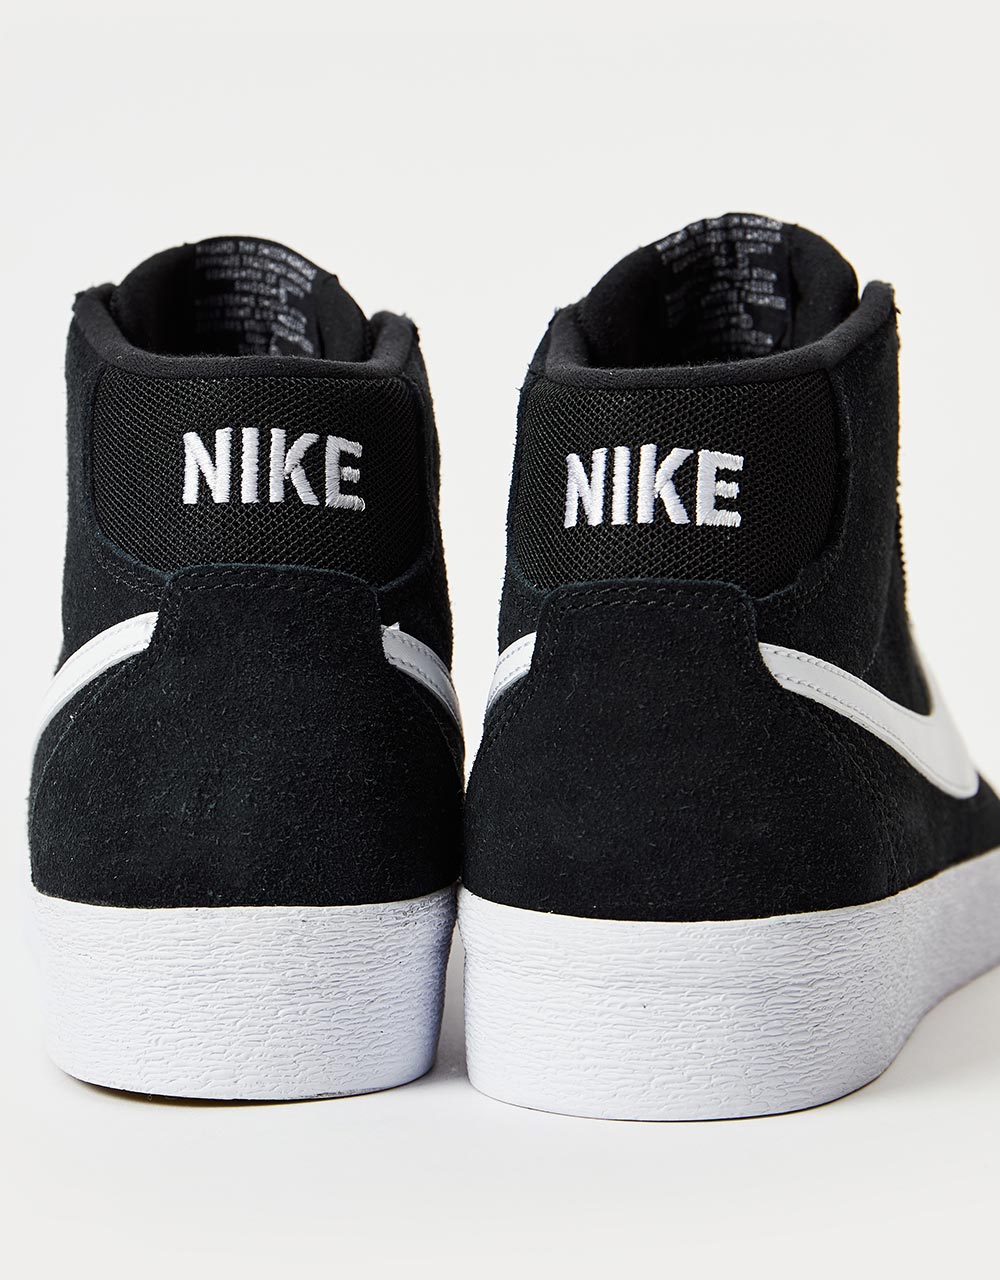 Nike SB Bruin High Skate Shoes - Black/White-Black-Gum Light Brown